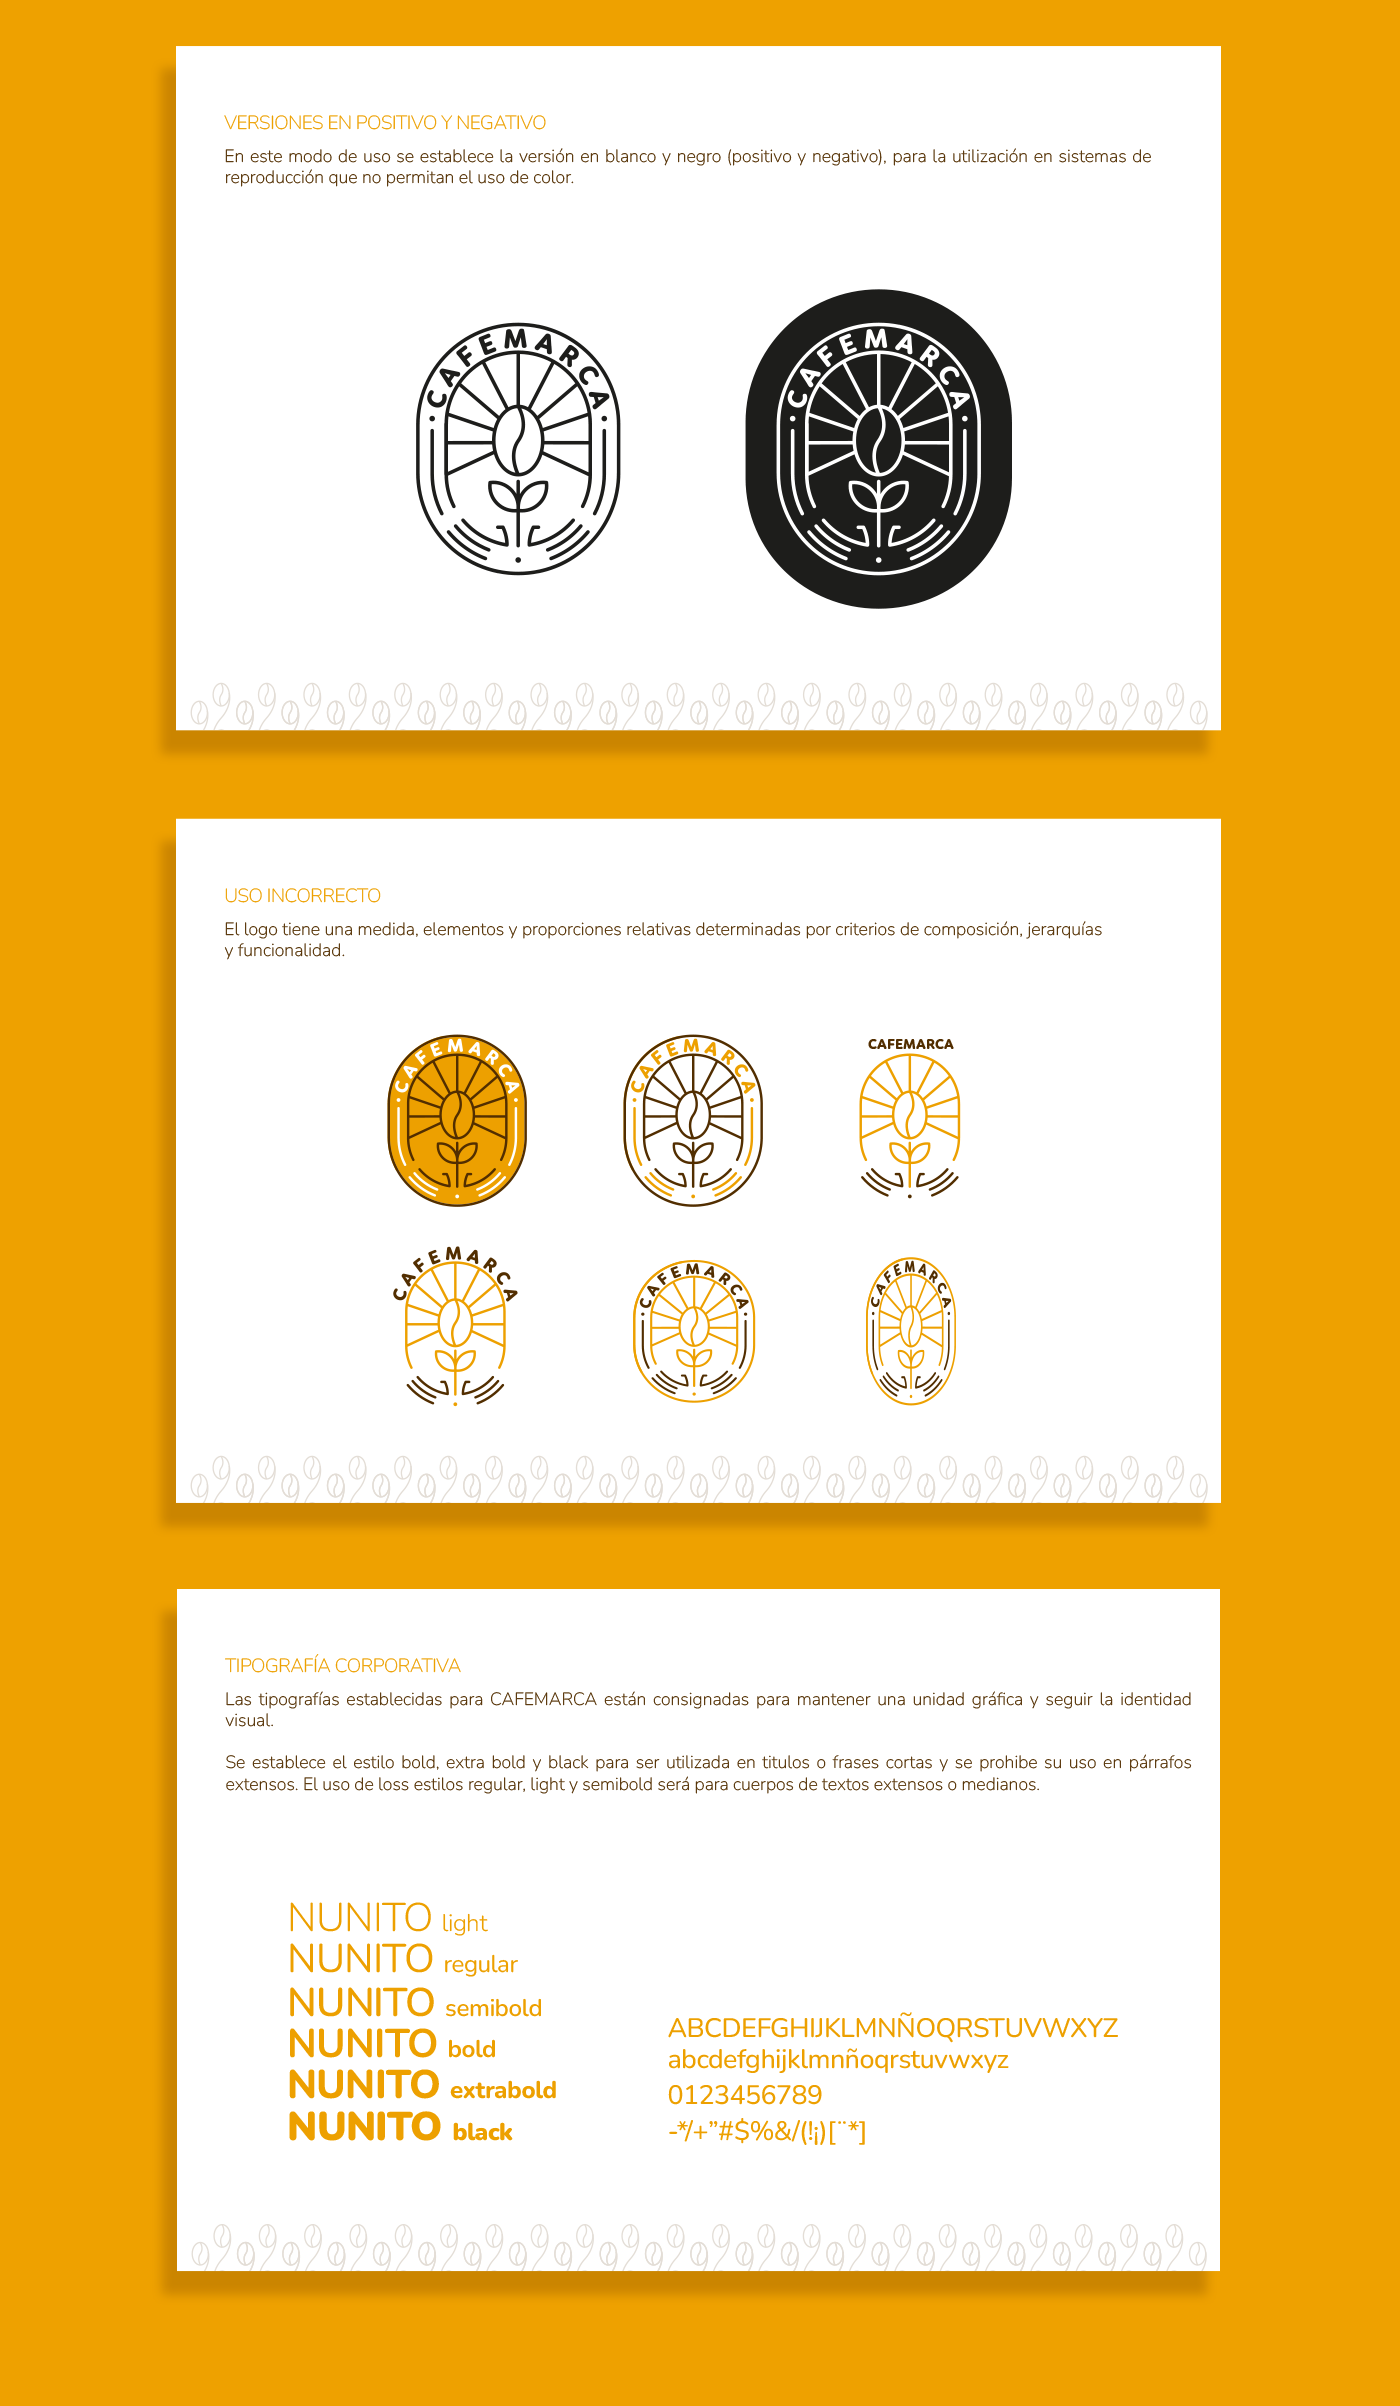 diseño diseño gráfico Identidad Corporativa identidad visual Logotipo Manual de Identidad Manual de Marca marca publicidad branding 